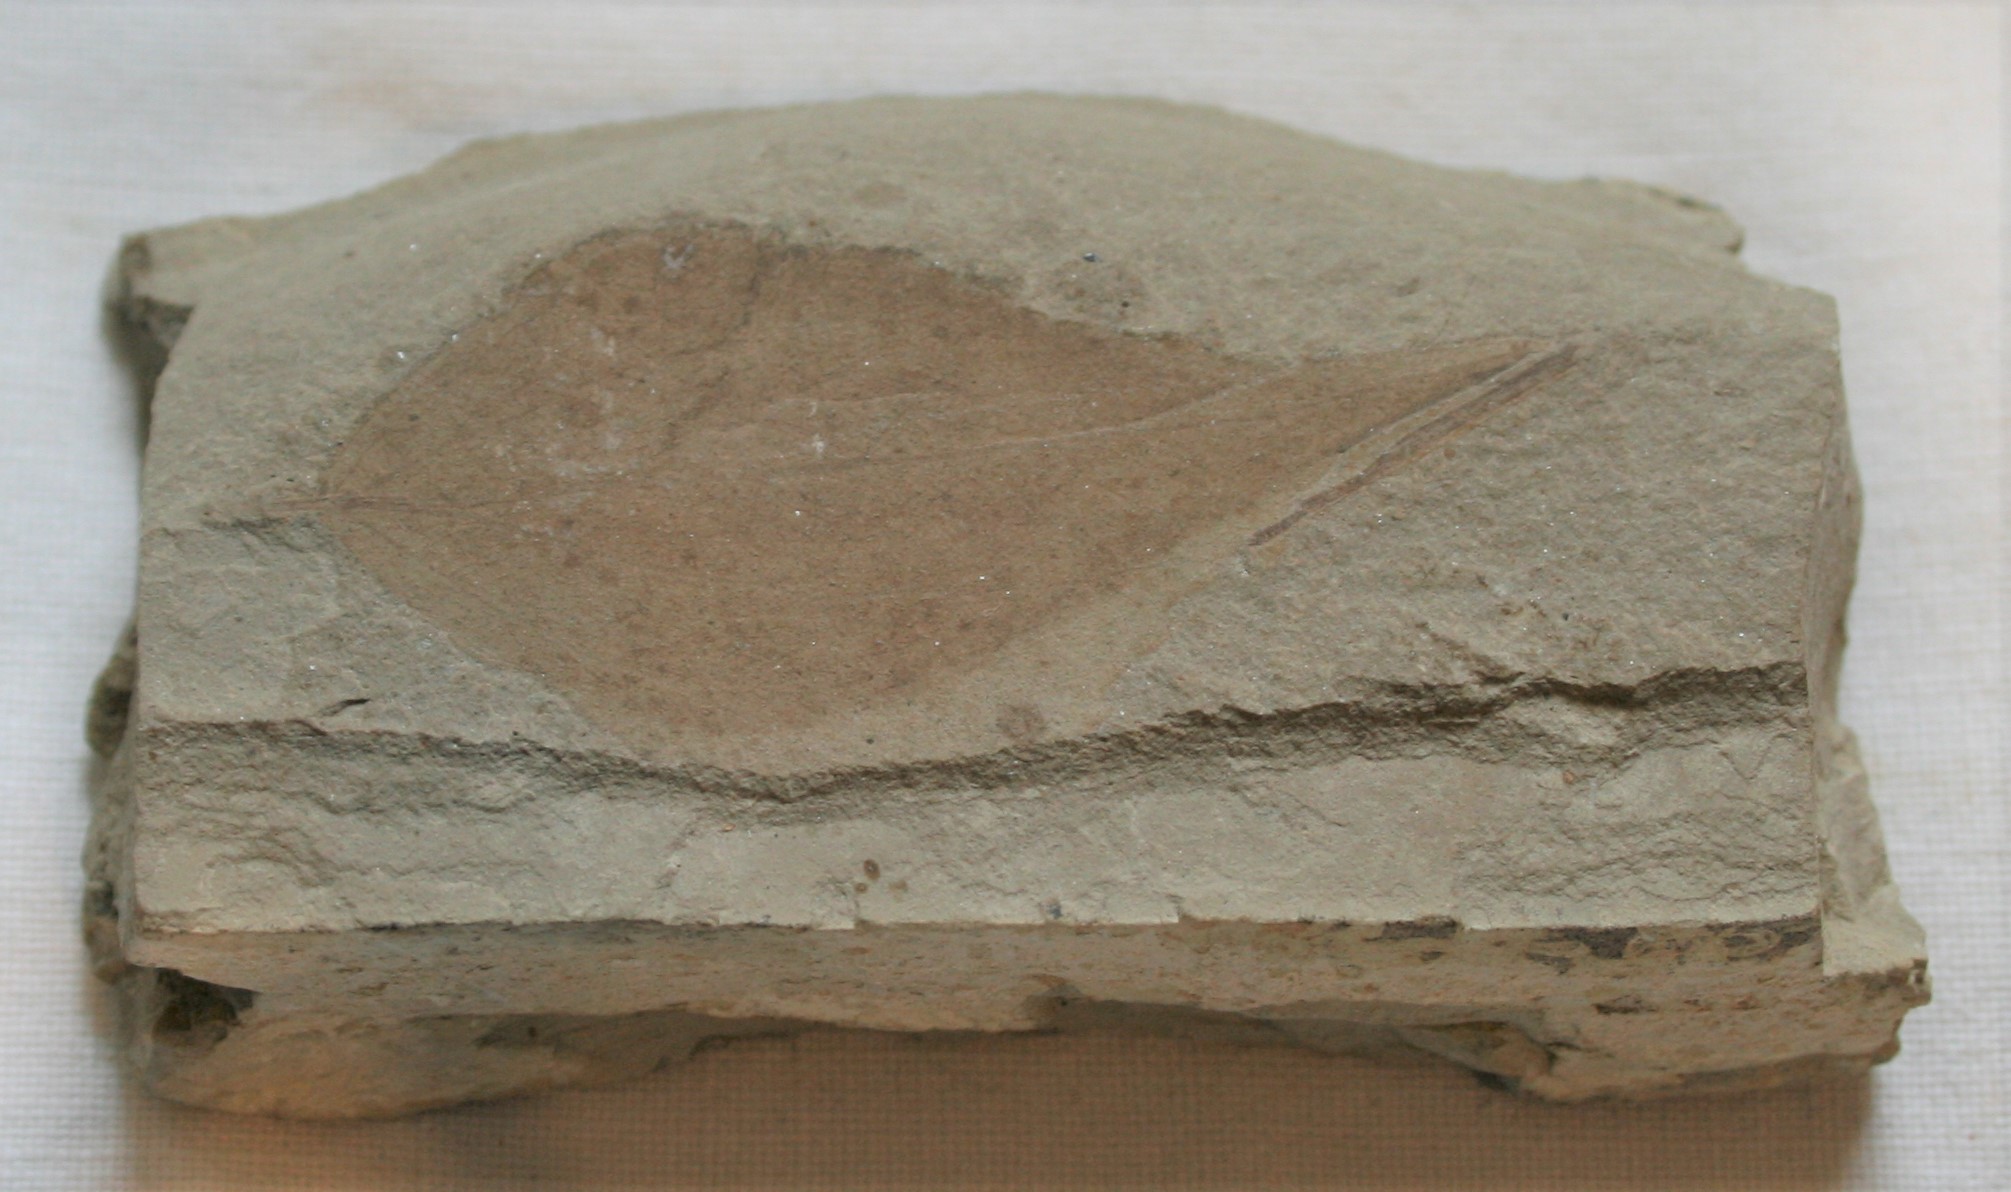 Leaf fossil